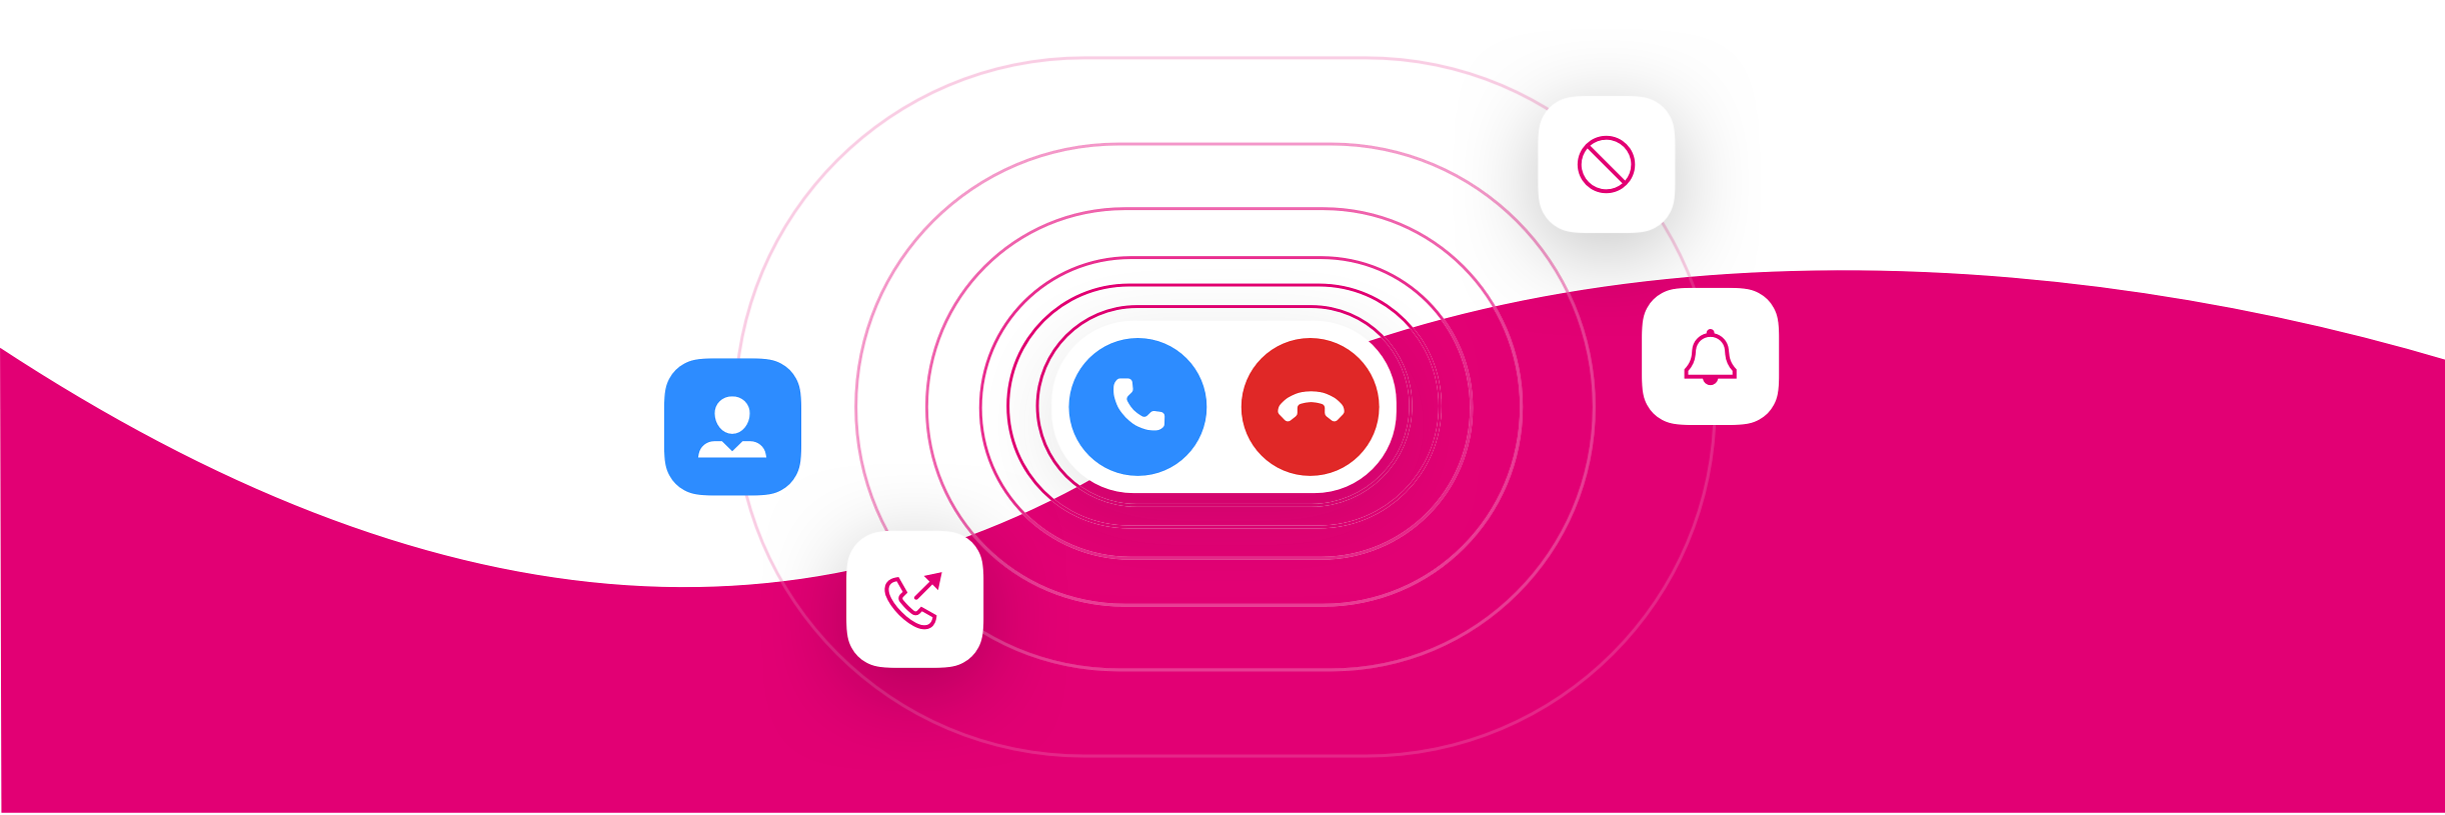 Generisches Zoom X Phone Bühnenbild mit Anruf-, Erinnerungs- und Kontaktsymbolen